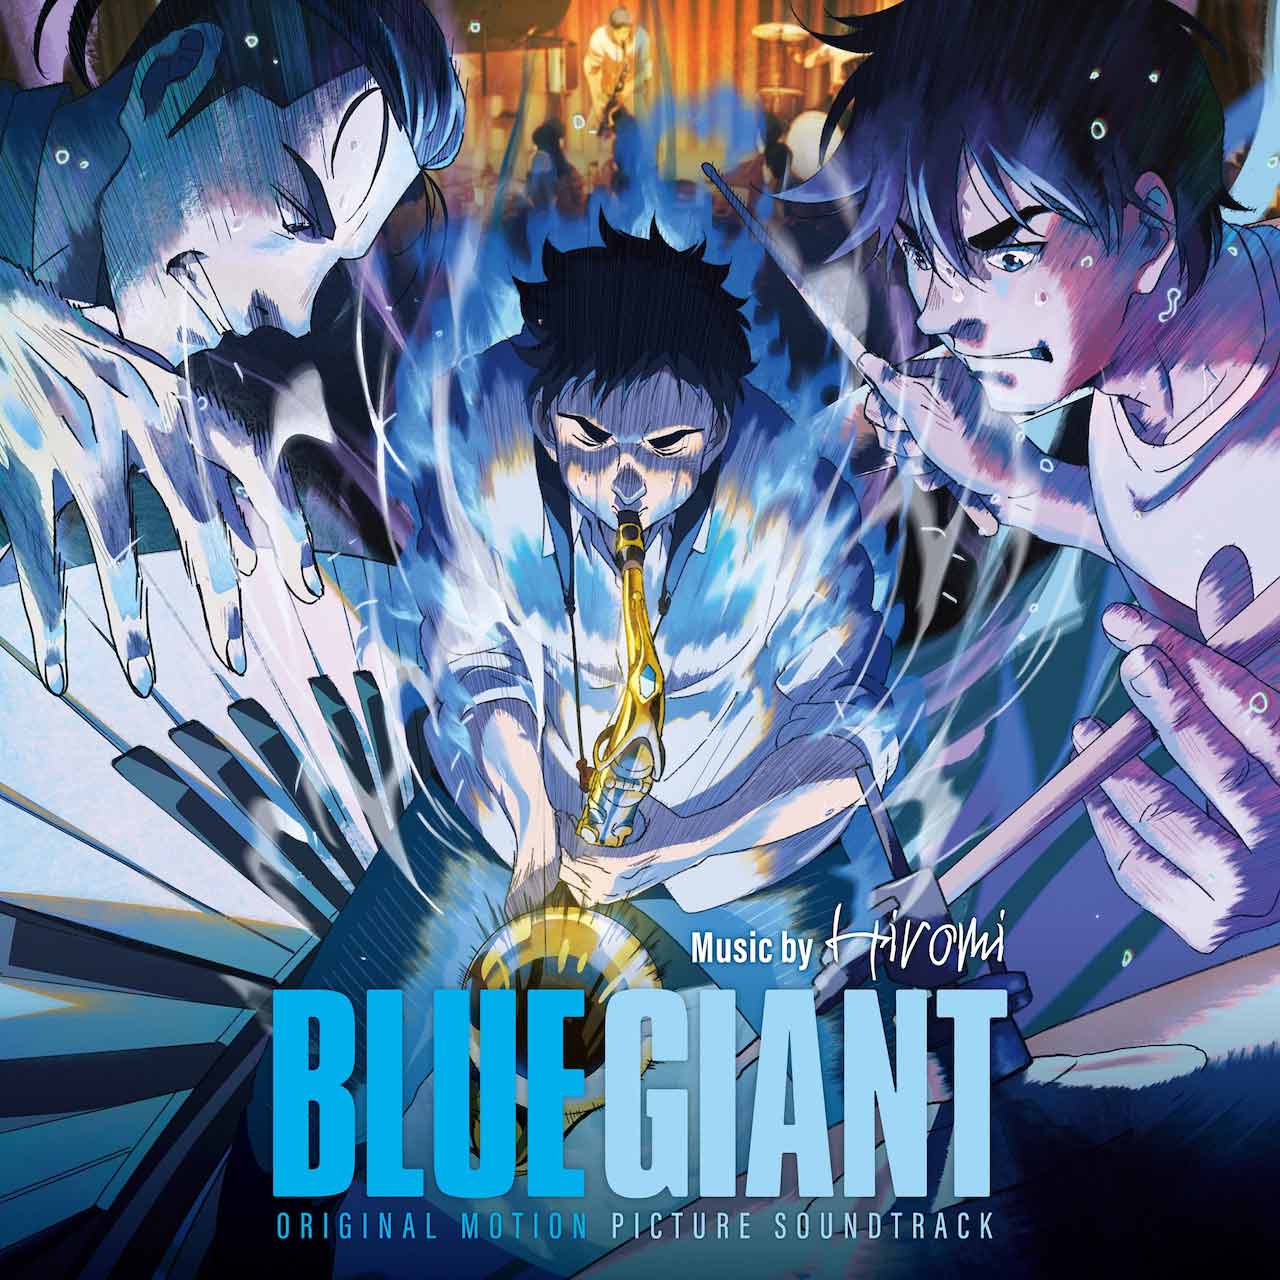 Blue Giant Original Motion Picture Soundtrack Set For September Release